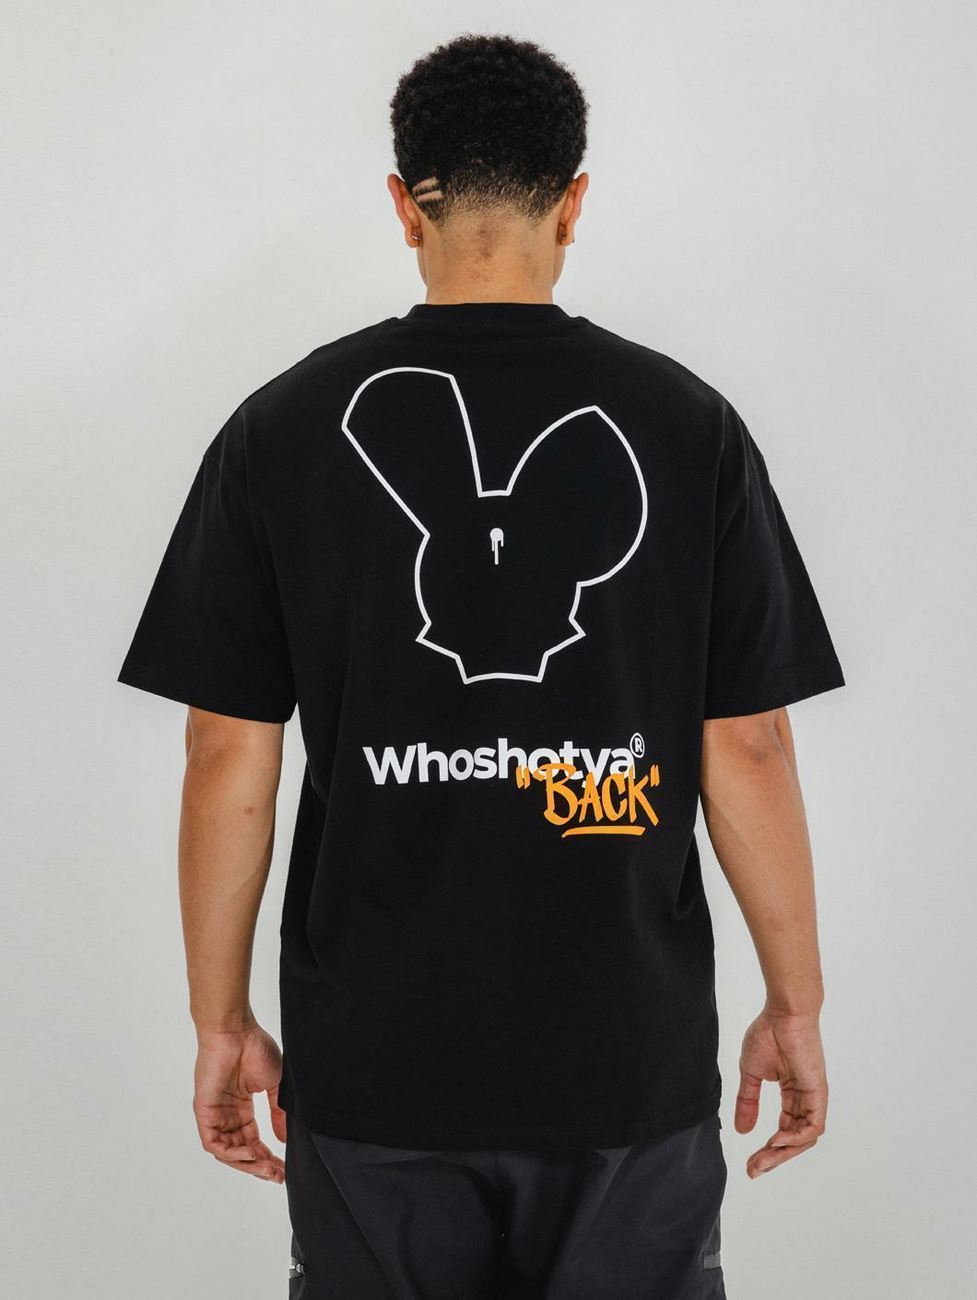 Who Shot Ya Shotyaback T-Shirt 4XL